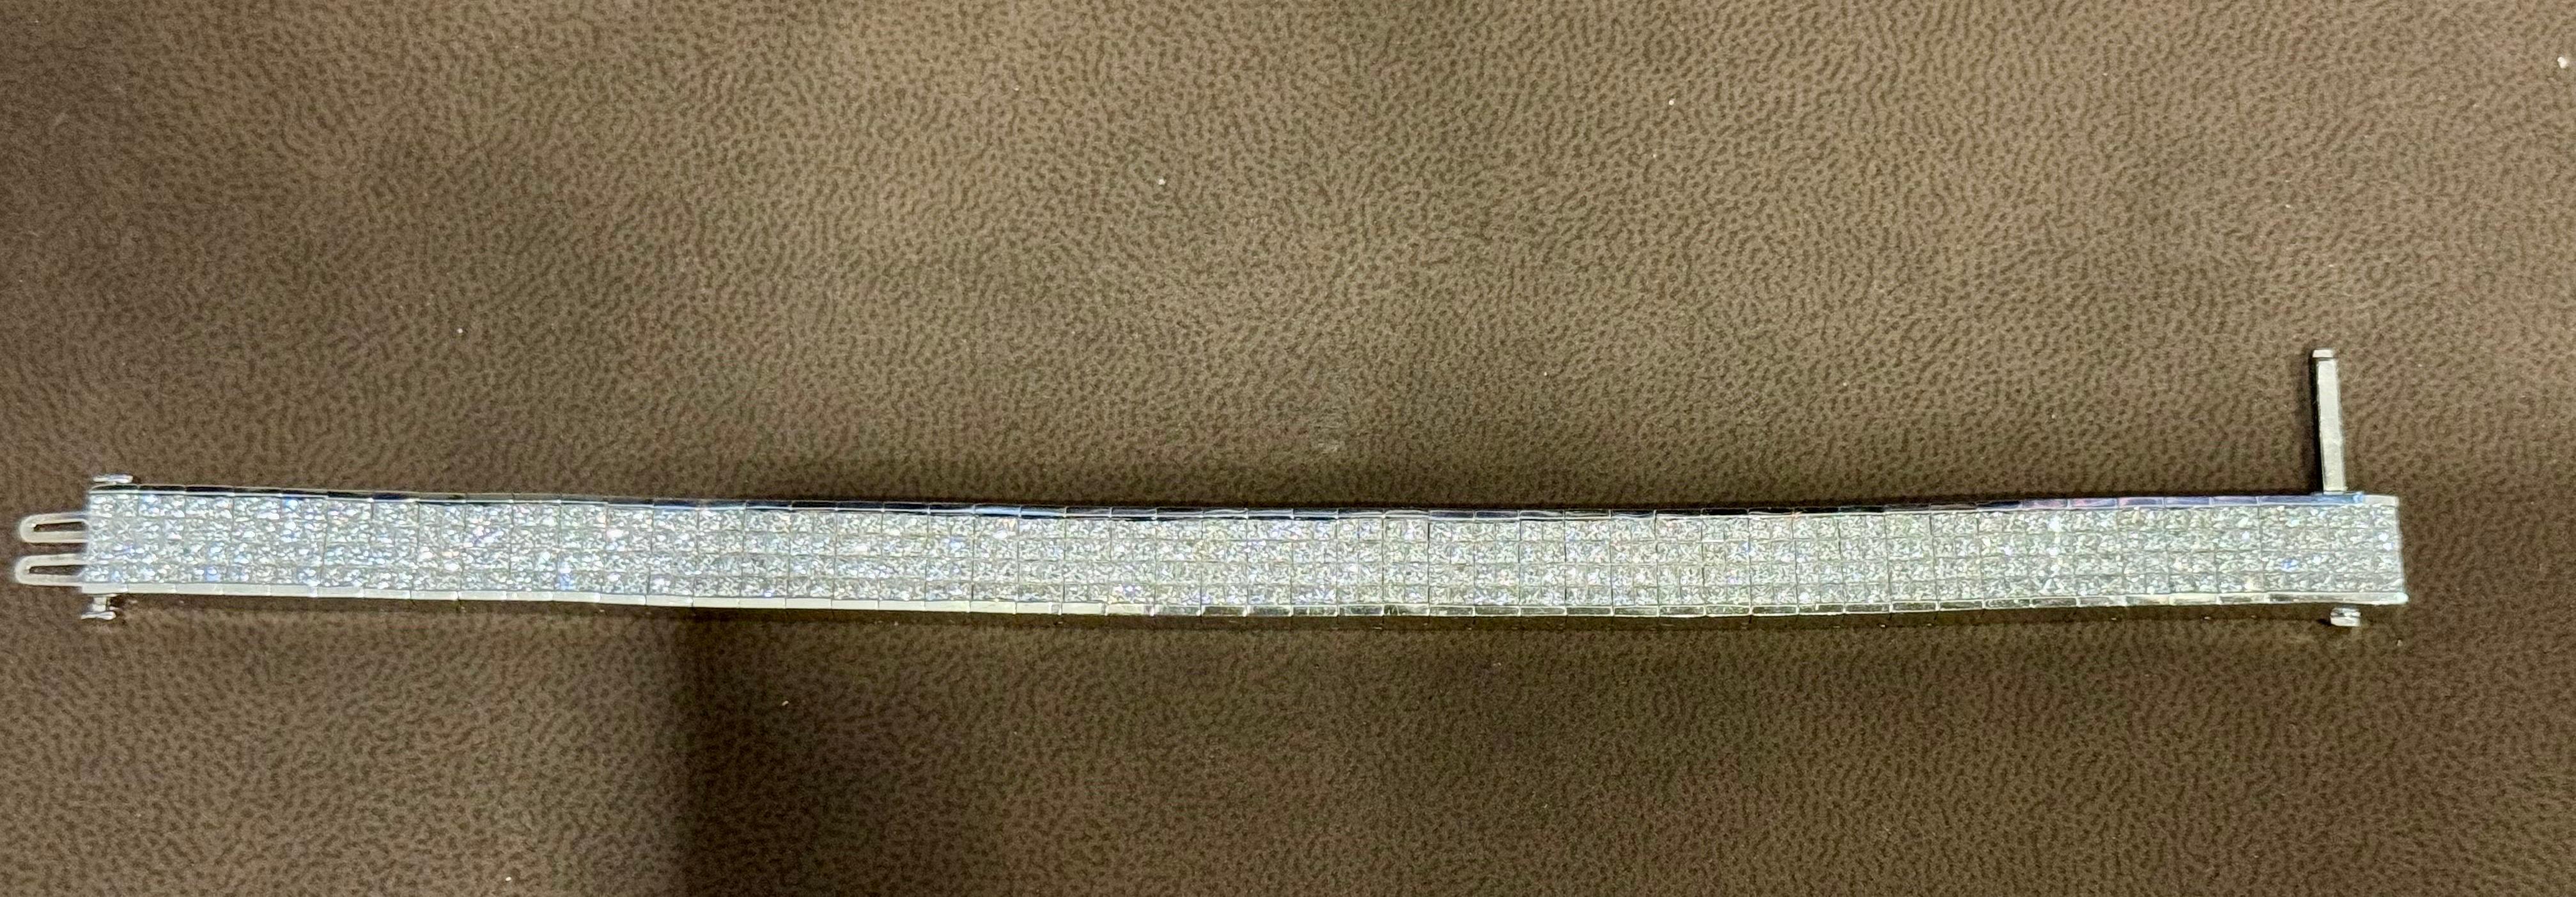 24 Carats Four Row Princesse Bracelet de tennis en or blanc 18kt 7.3